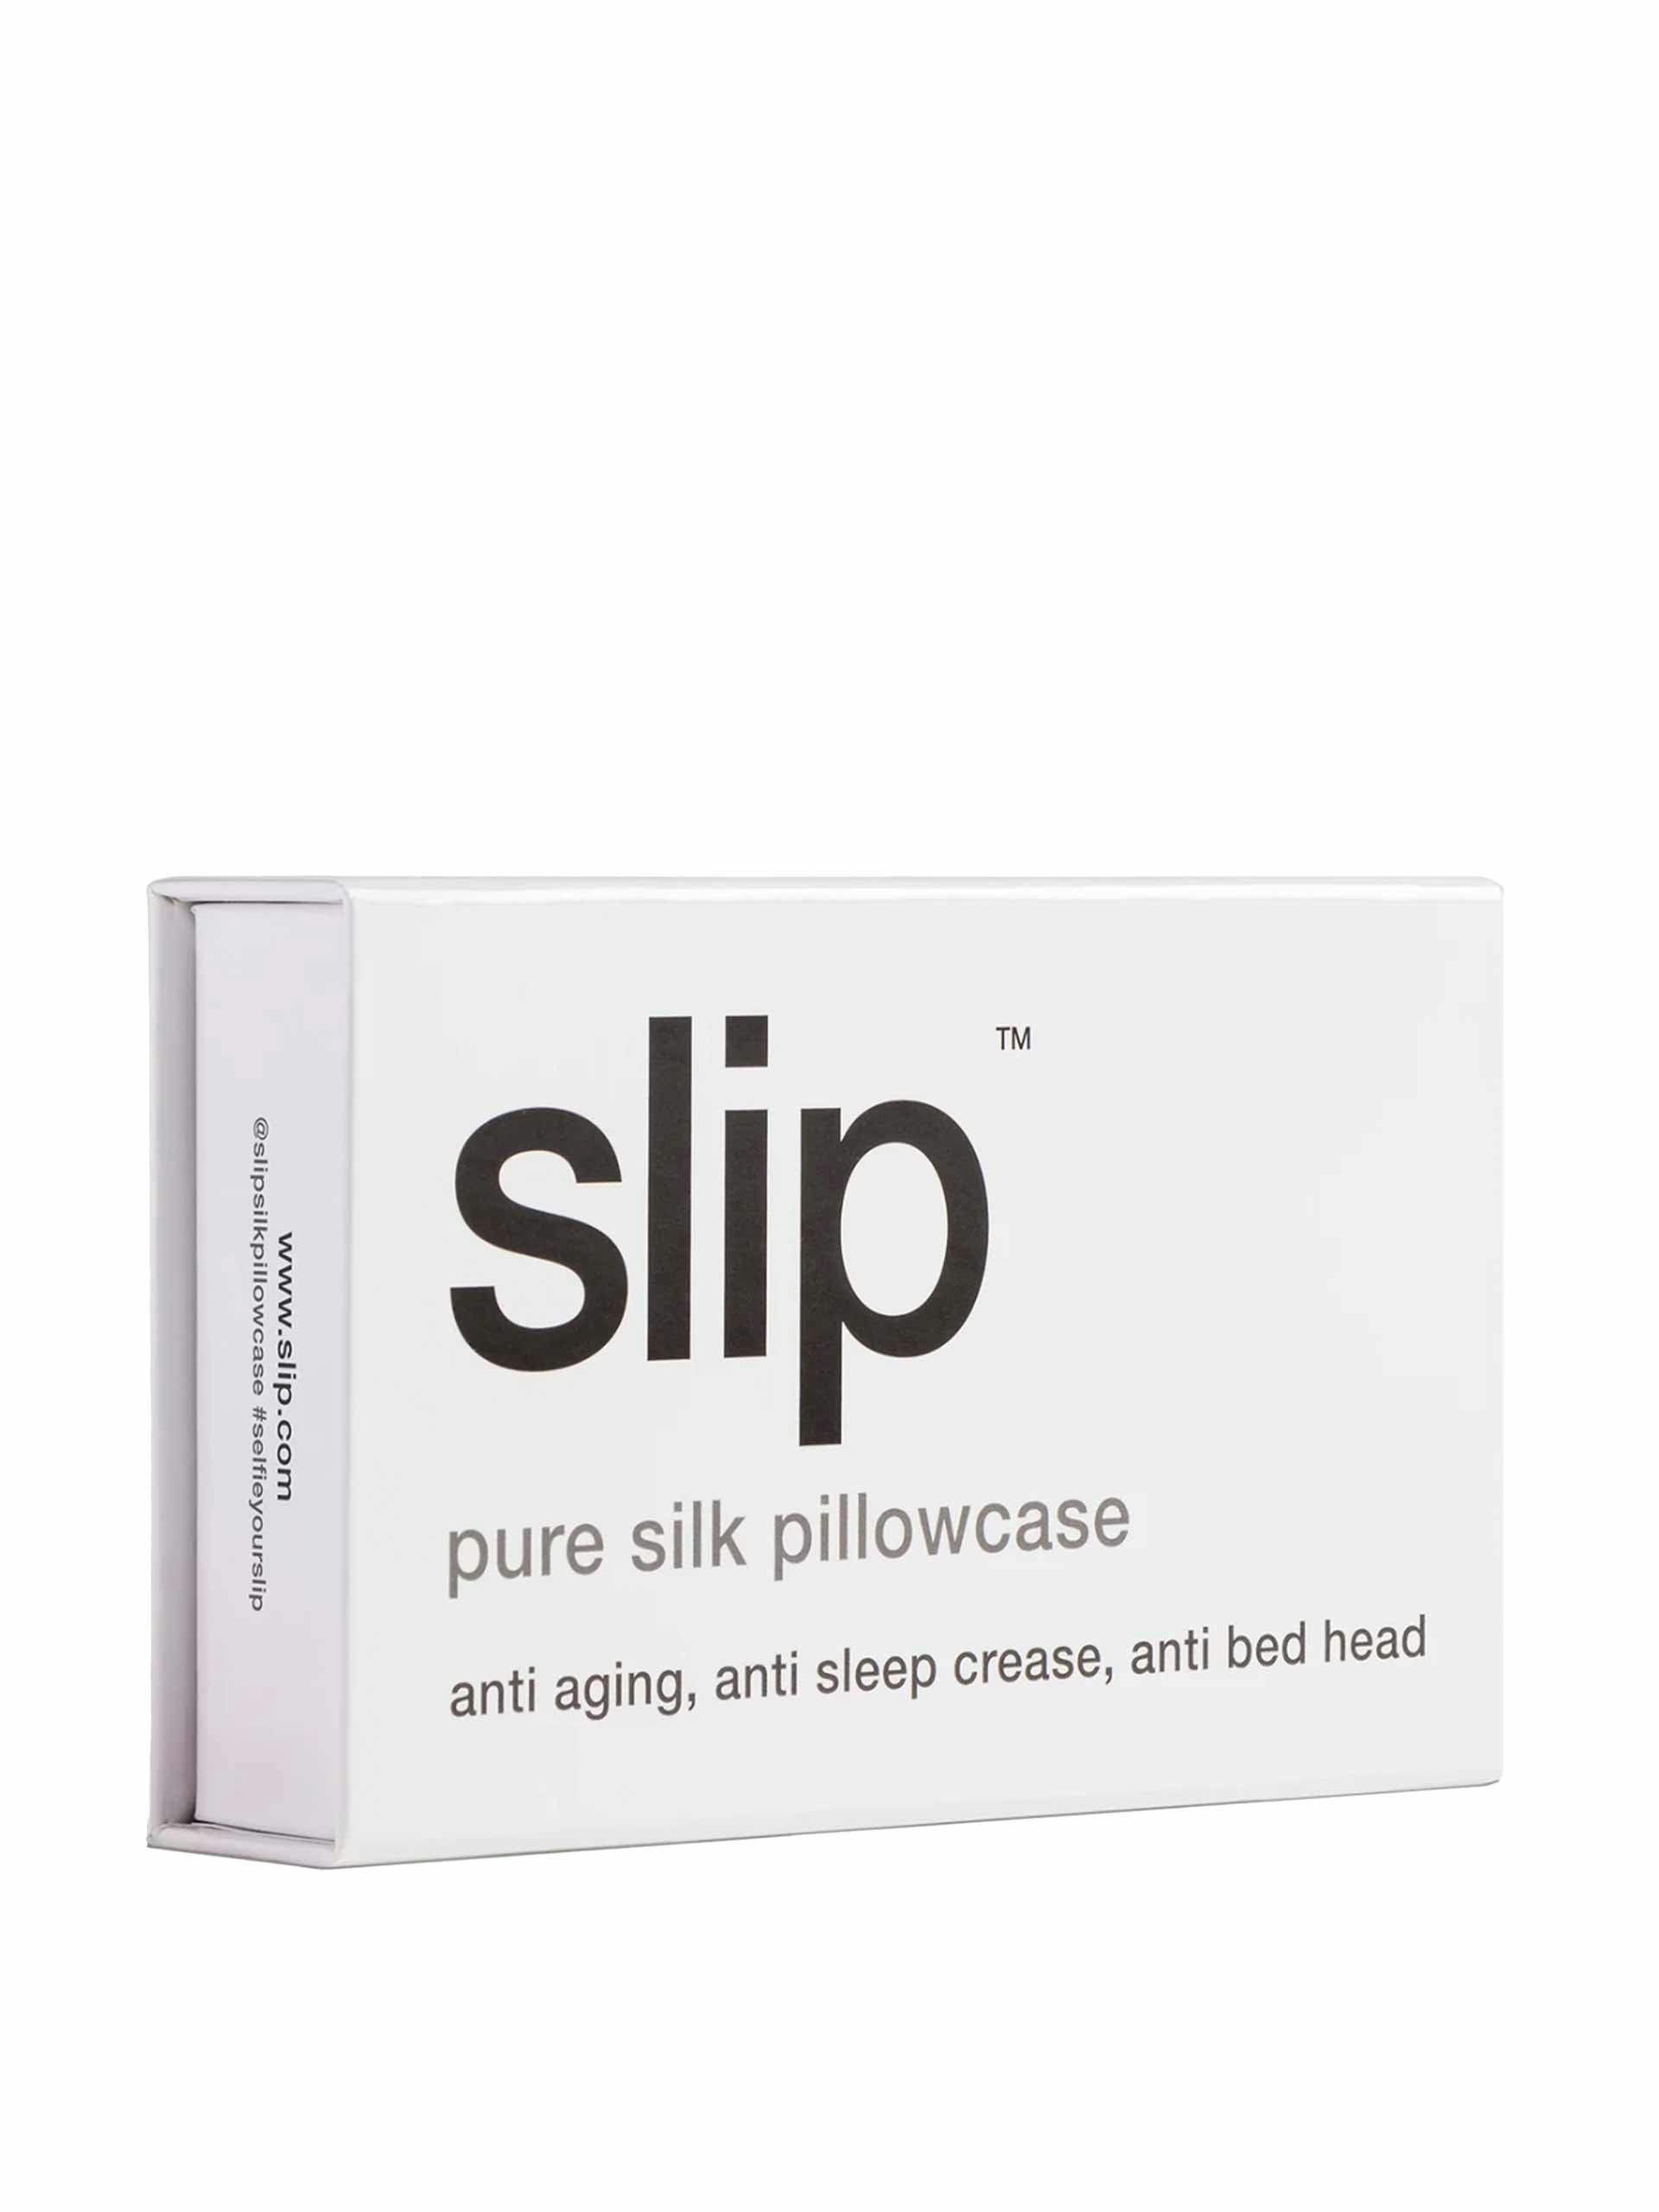 Pure silk pillowcase